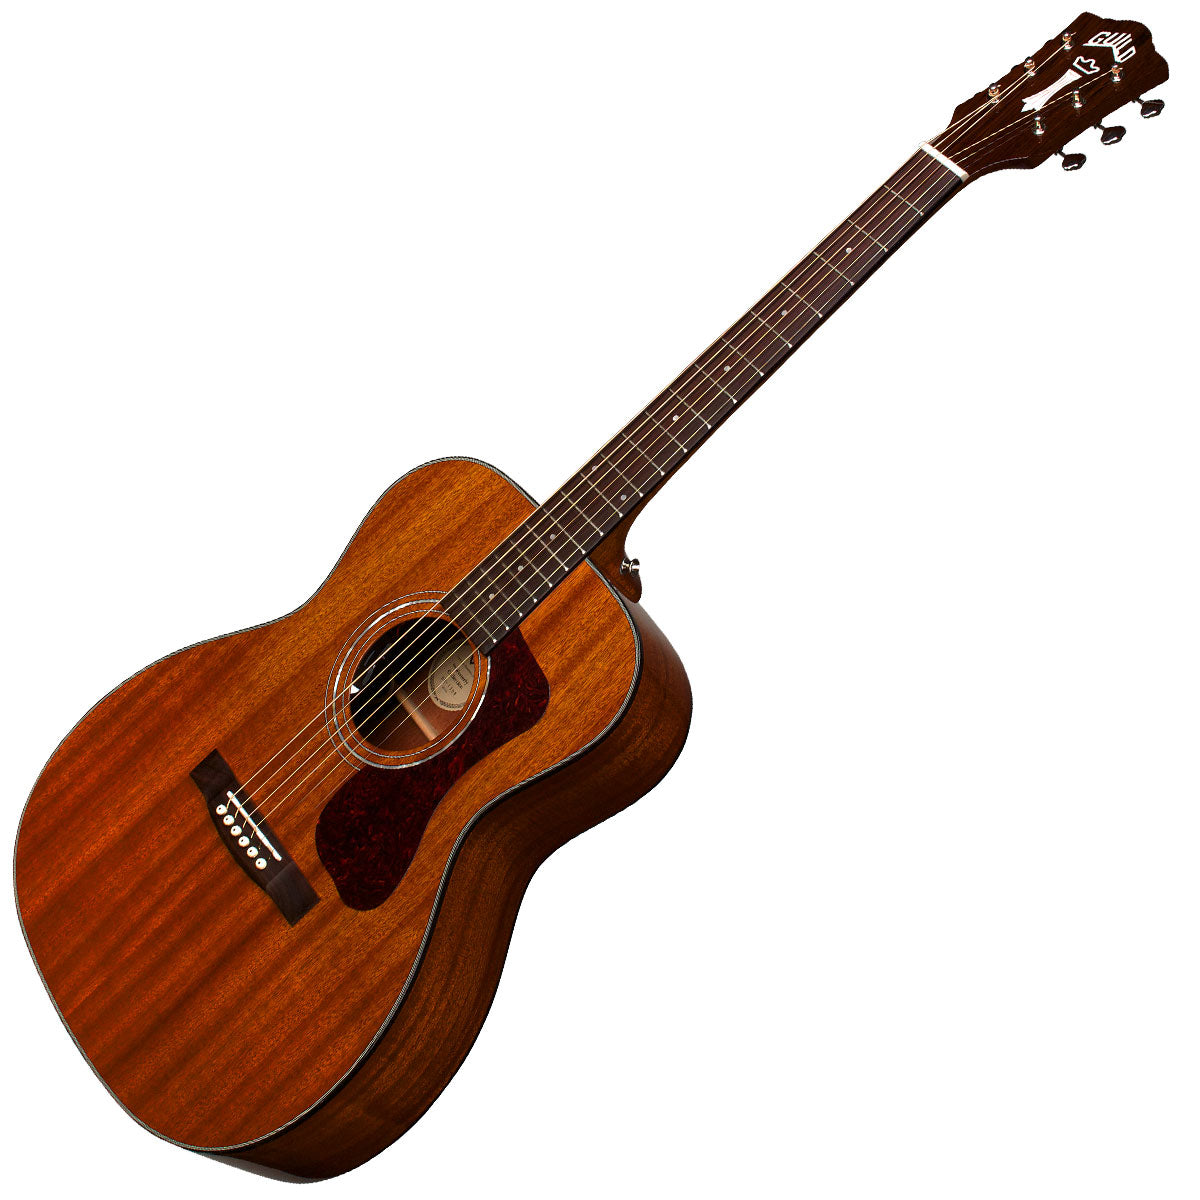 Guild OM-120 Acoustic Guitar with Bag - Natural